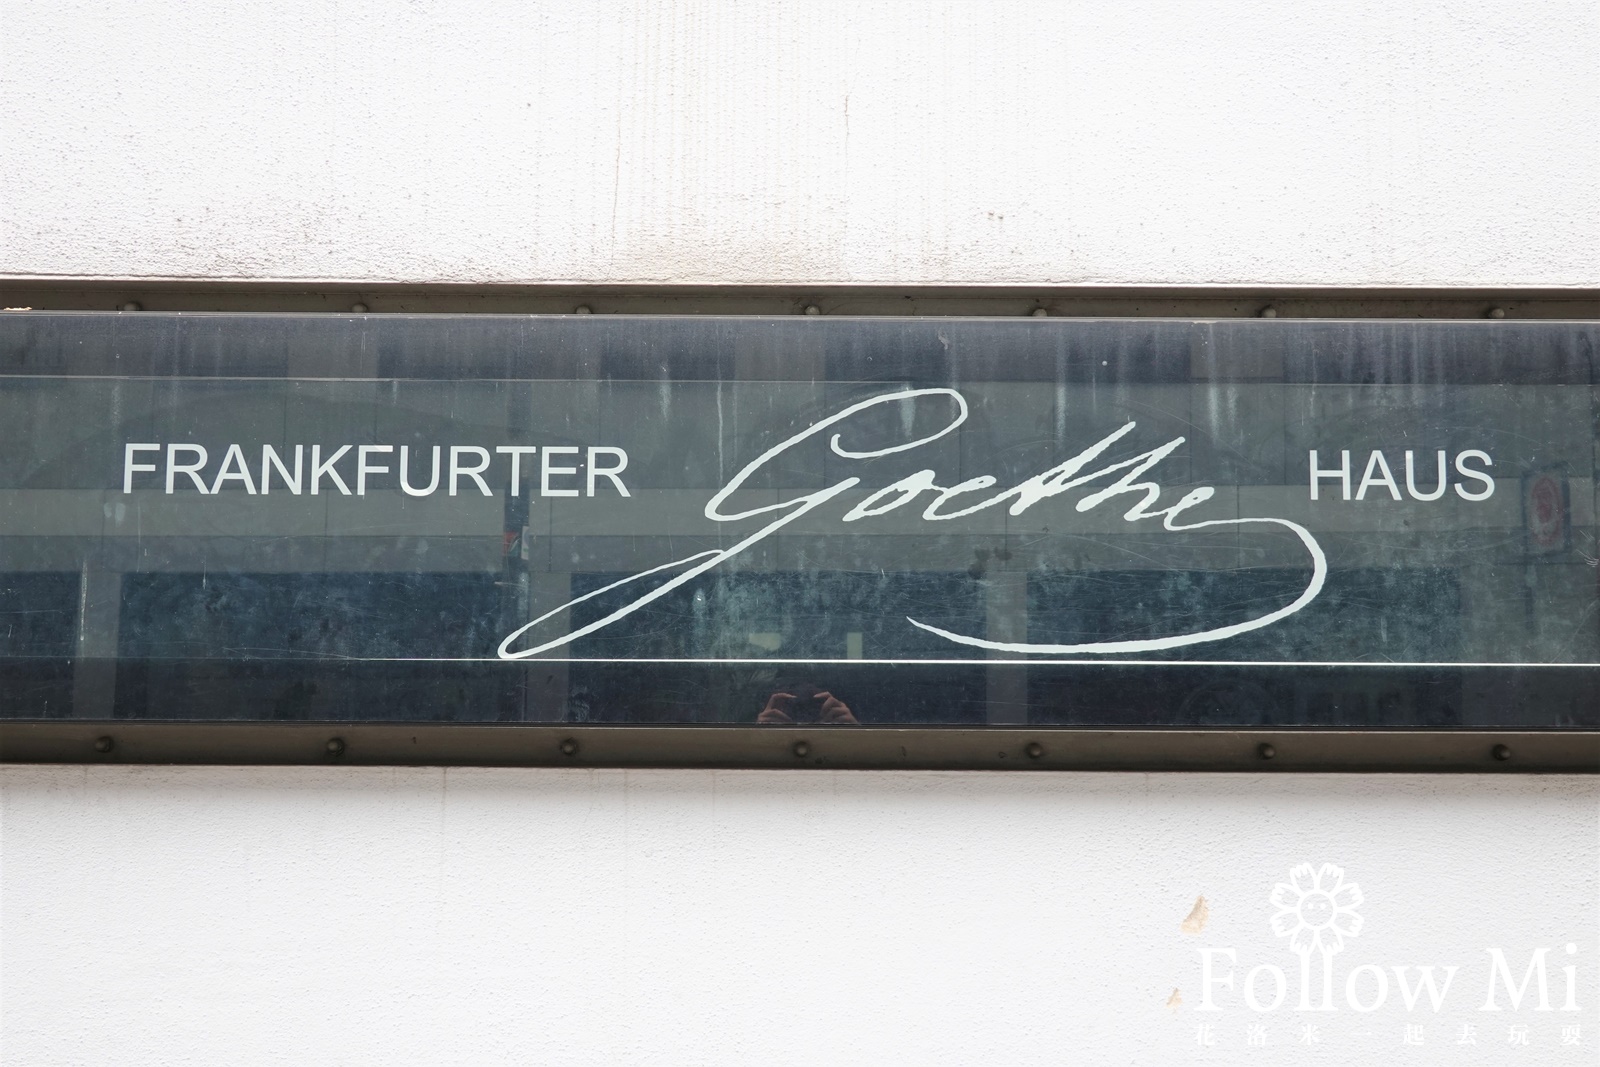 Goethe Haus,德國景點,歌德故居,法蘭克福景點,法蘭克福老城區